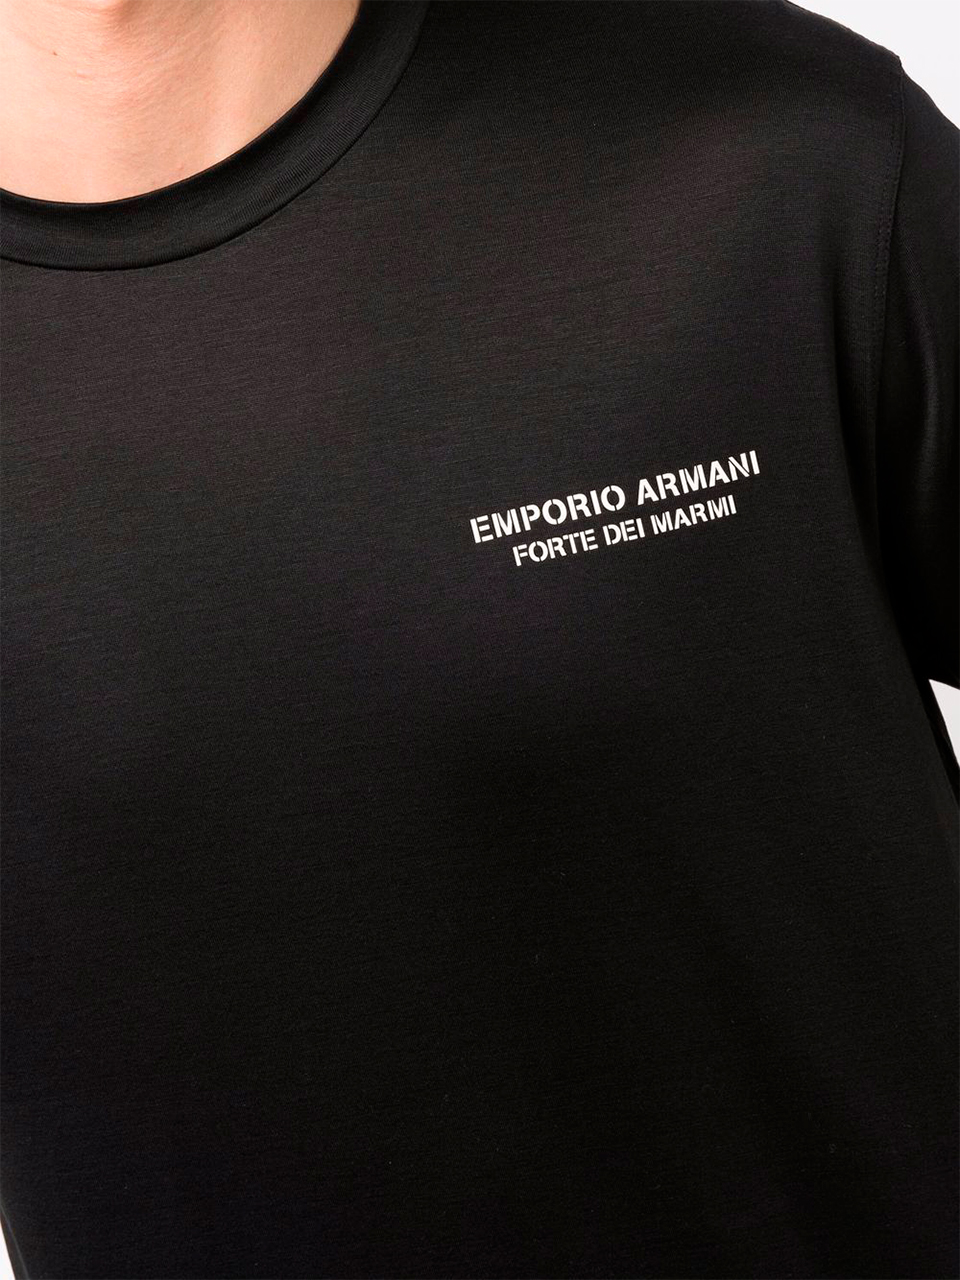 Imagem de: Camiseta Emporio Armani Preta com Logo Pequeno